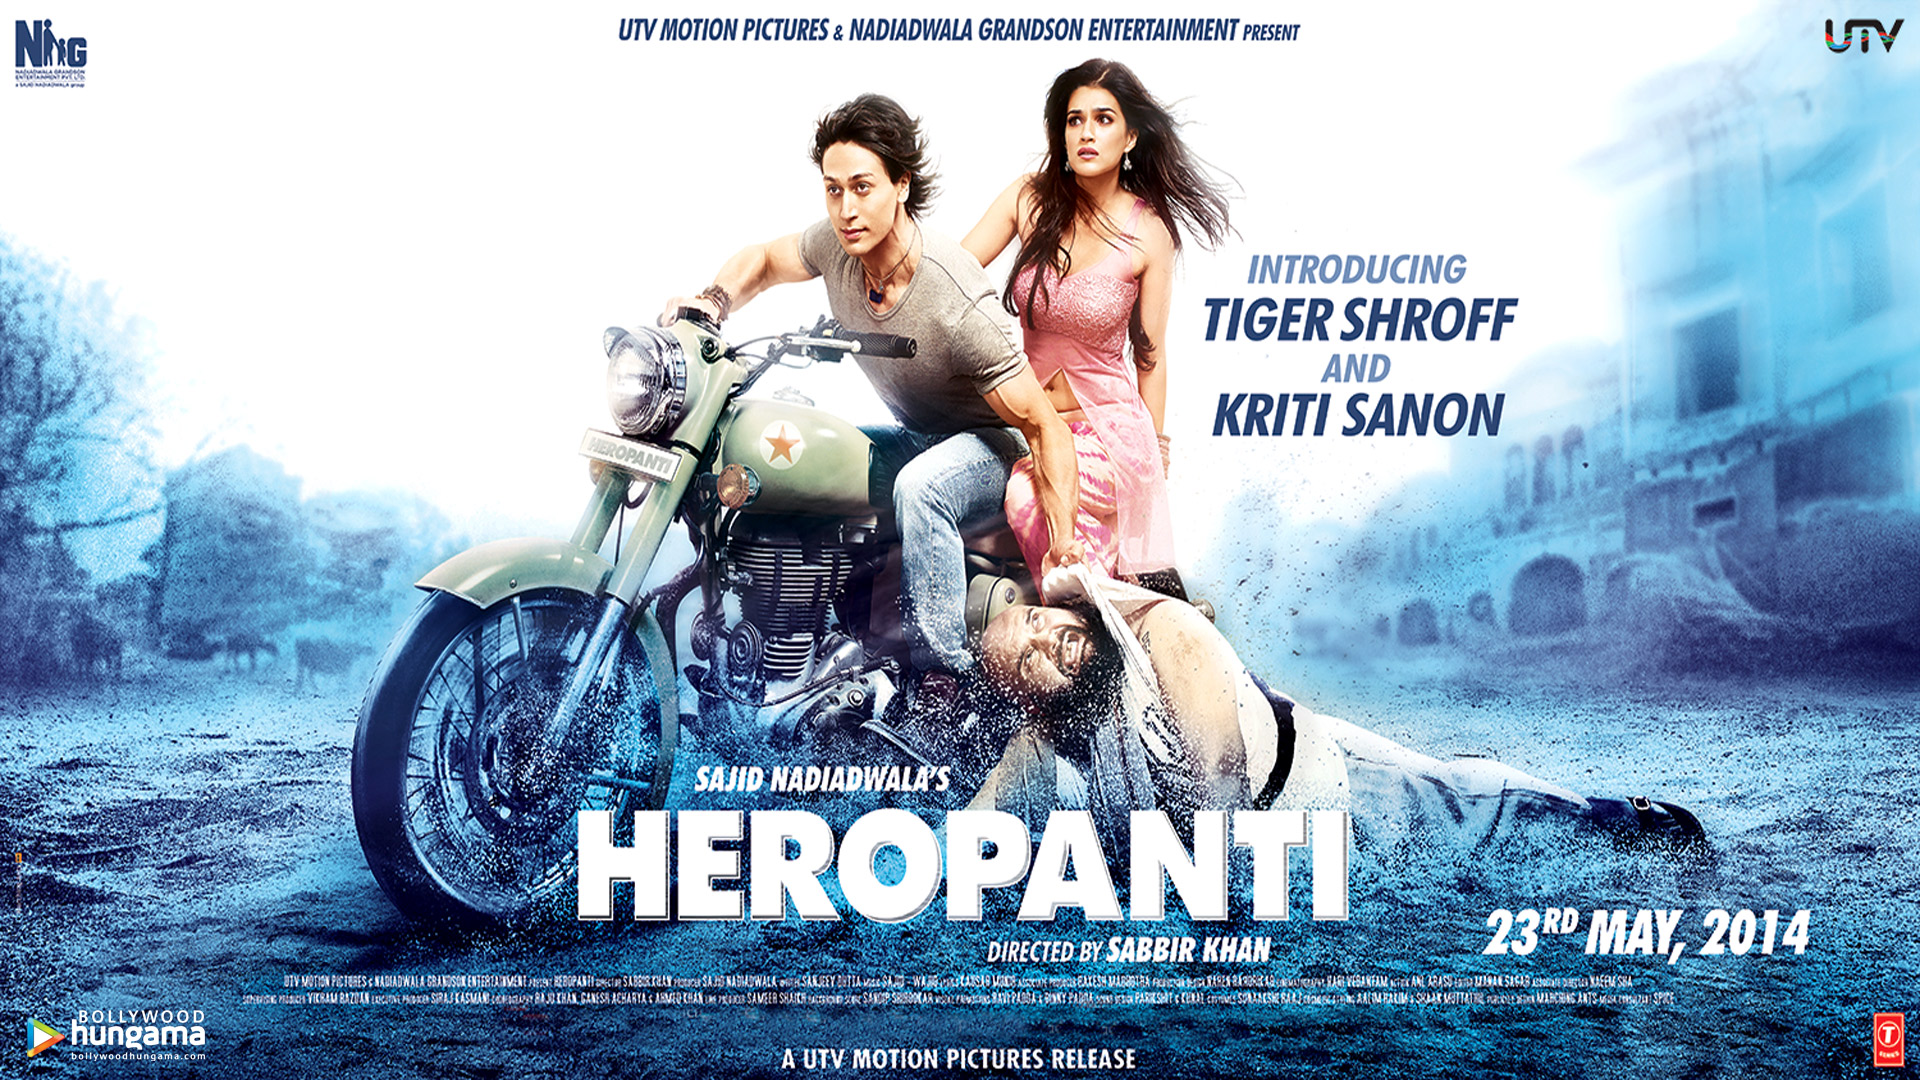 Heropanti 2014 Wallpapers | Heropanti 2014 HD Images | Photos heropanti-27  - Bollywood Hungama